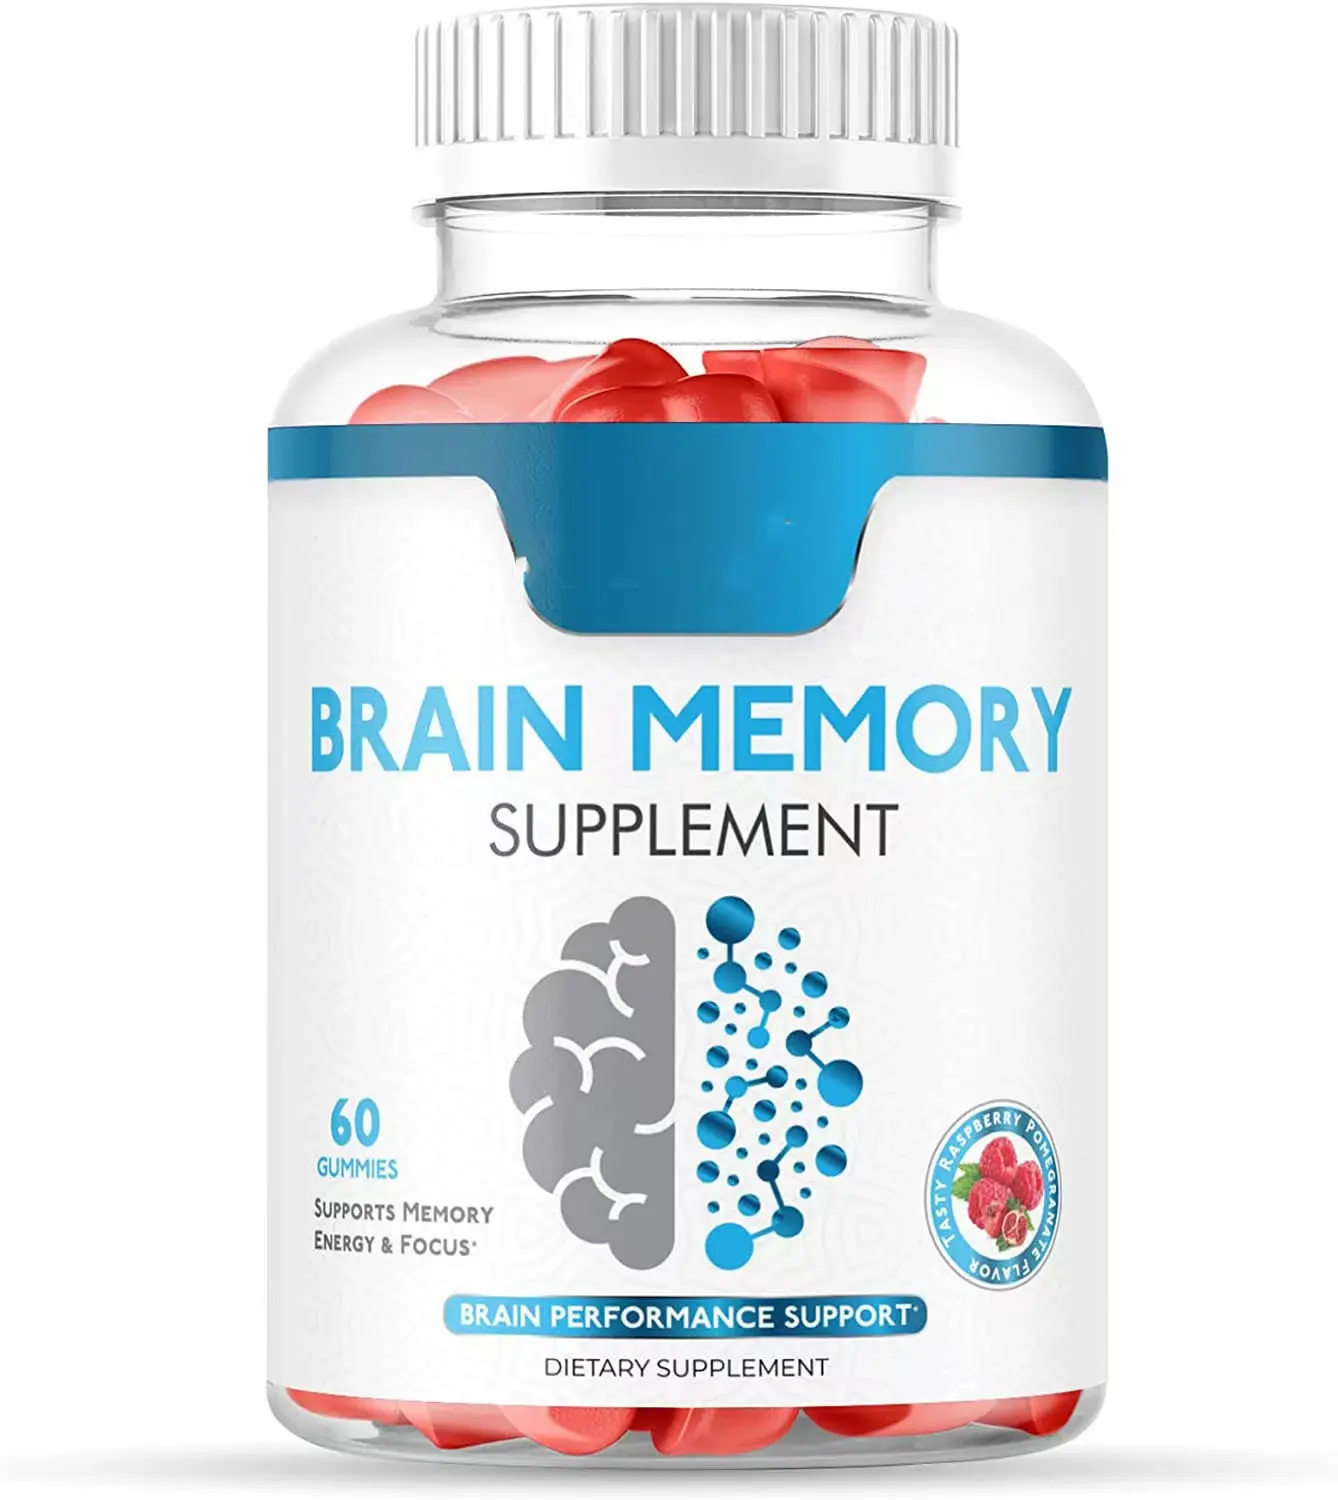 Suplementos de reforço cerebral melhoram a memória, energia, foco, inteligência, nootrópicos, gomas cerebrais